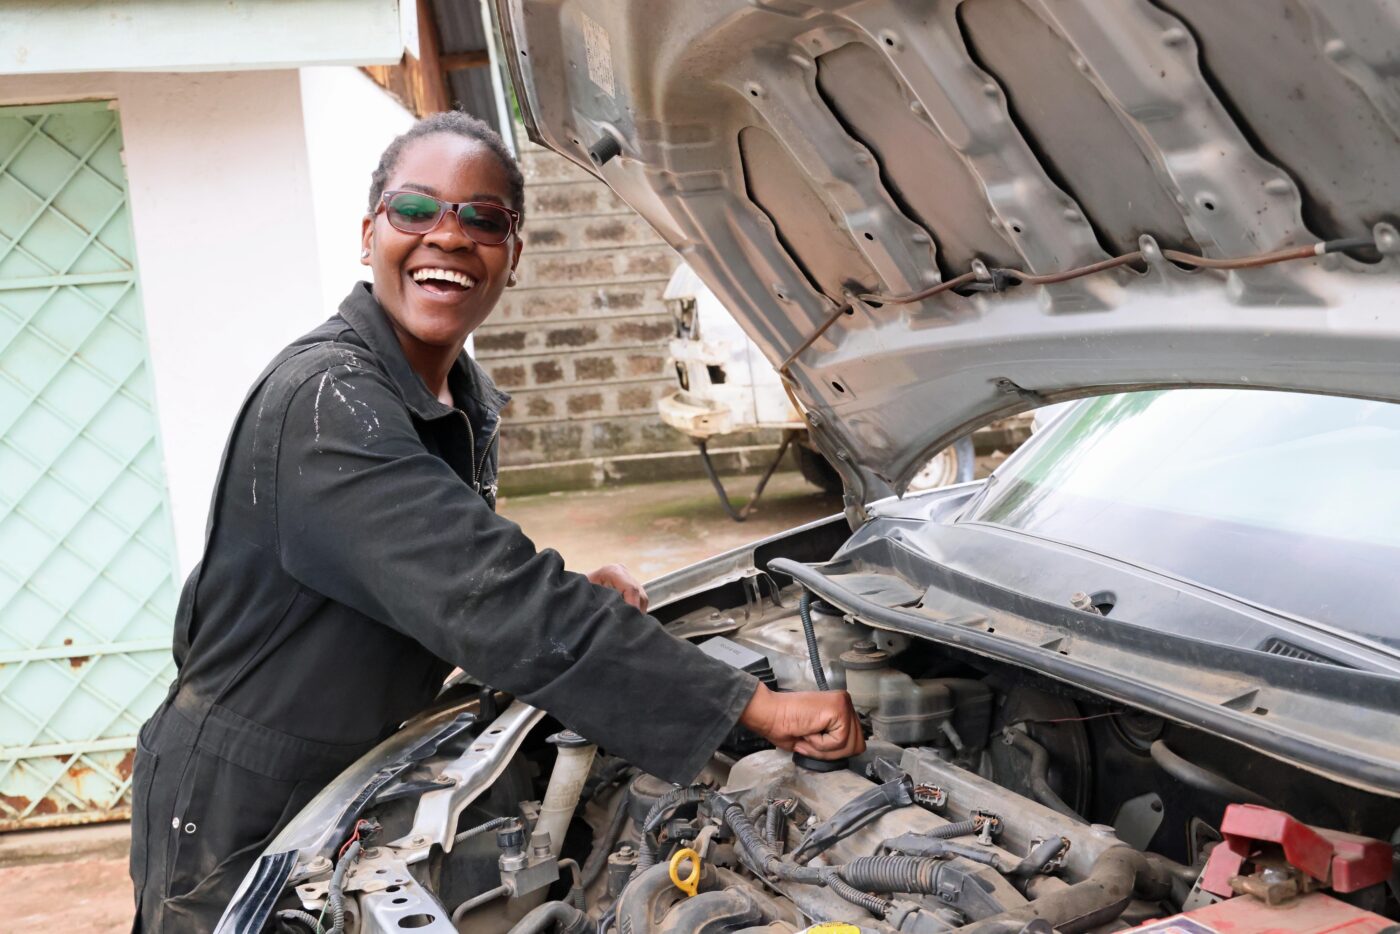 Nuori naurava nainen työtakissa, käsi auton konepellin alla olevissa osissa.